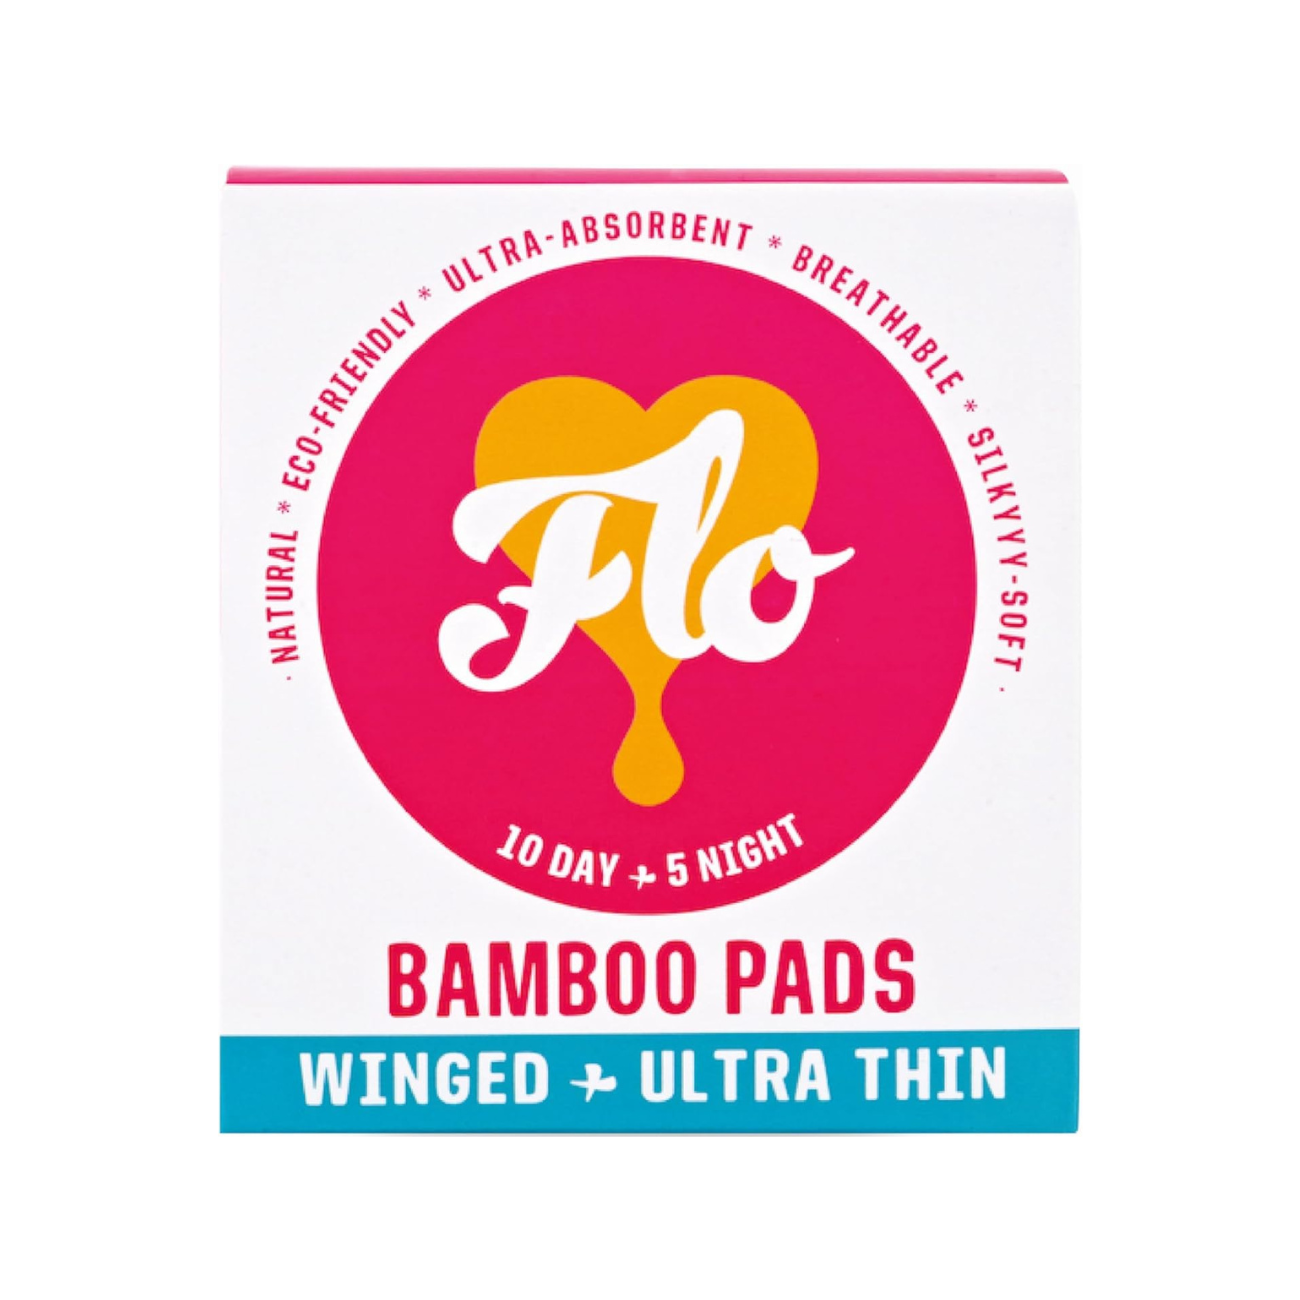 amboo Pads Winged & Ultra Thin 10 Day & 5 Night Pads